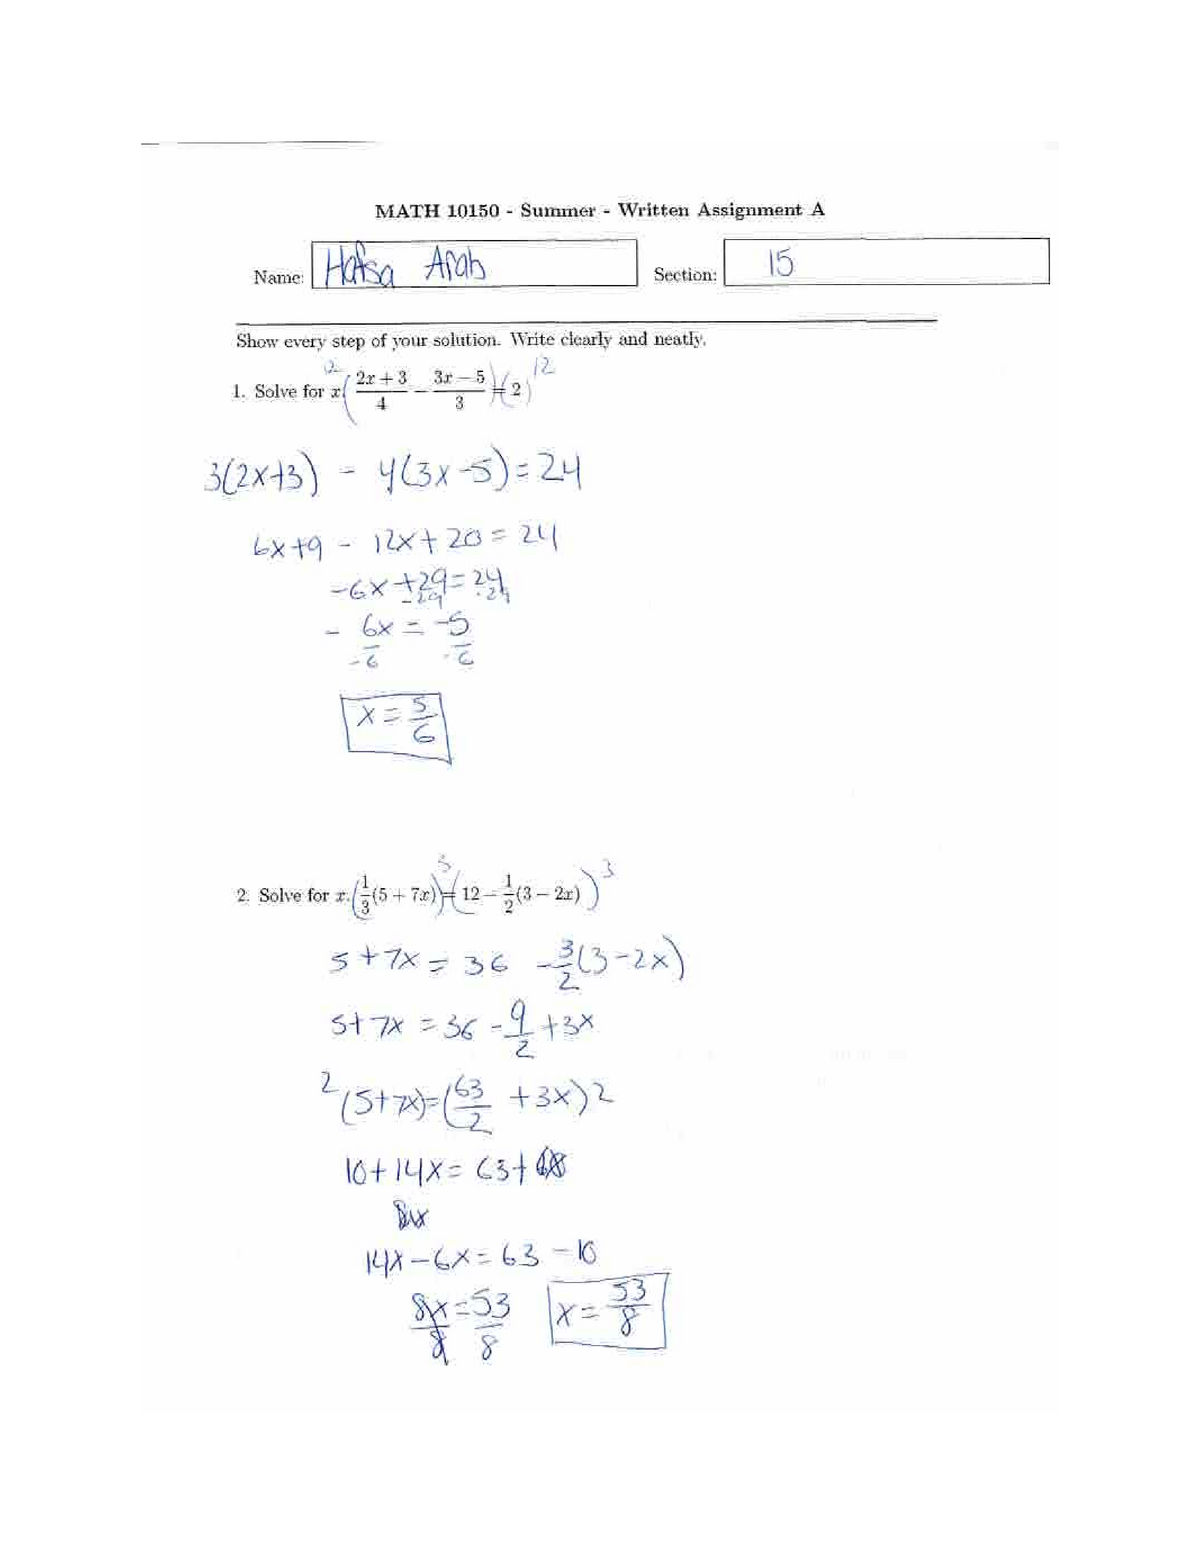 Math 10150 Assignment A - MATH 101 - Studocu